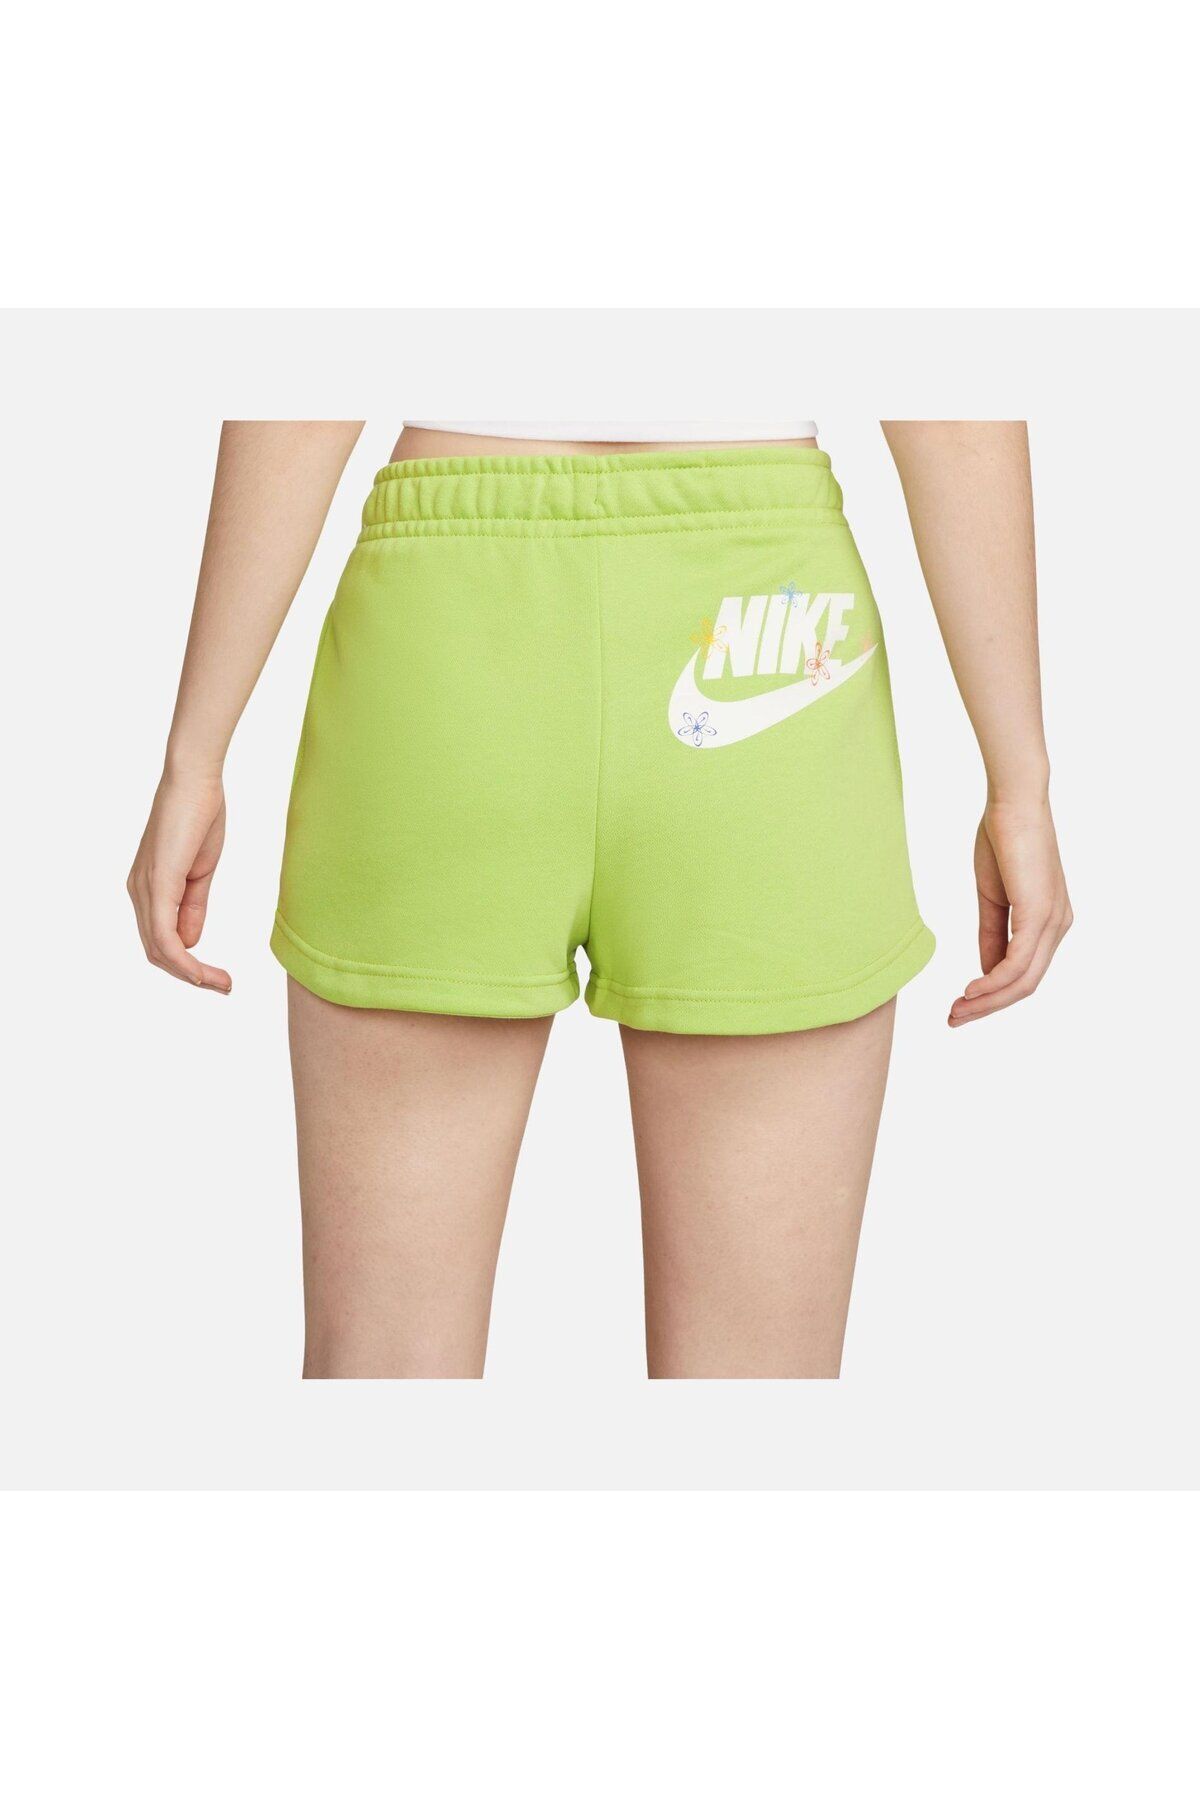 Nike Sportswear Essentials Fleece Yeşil Kadın Şort DZ3511-332